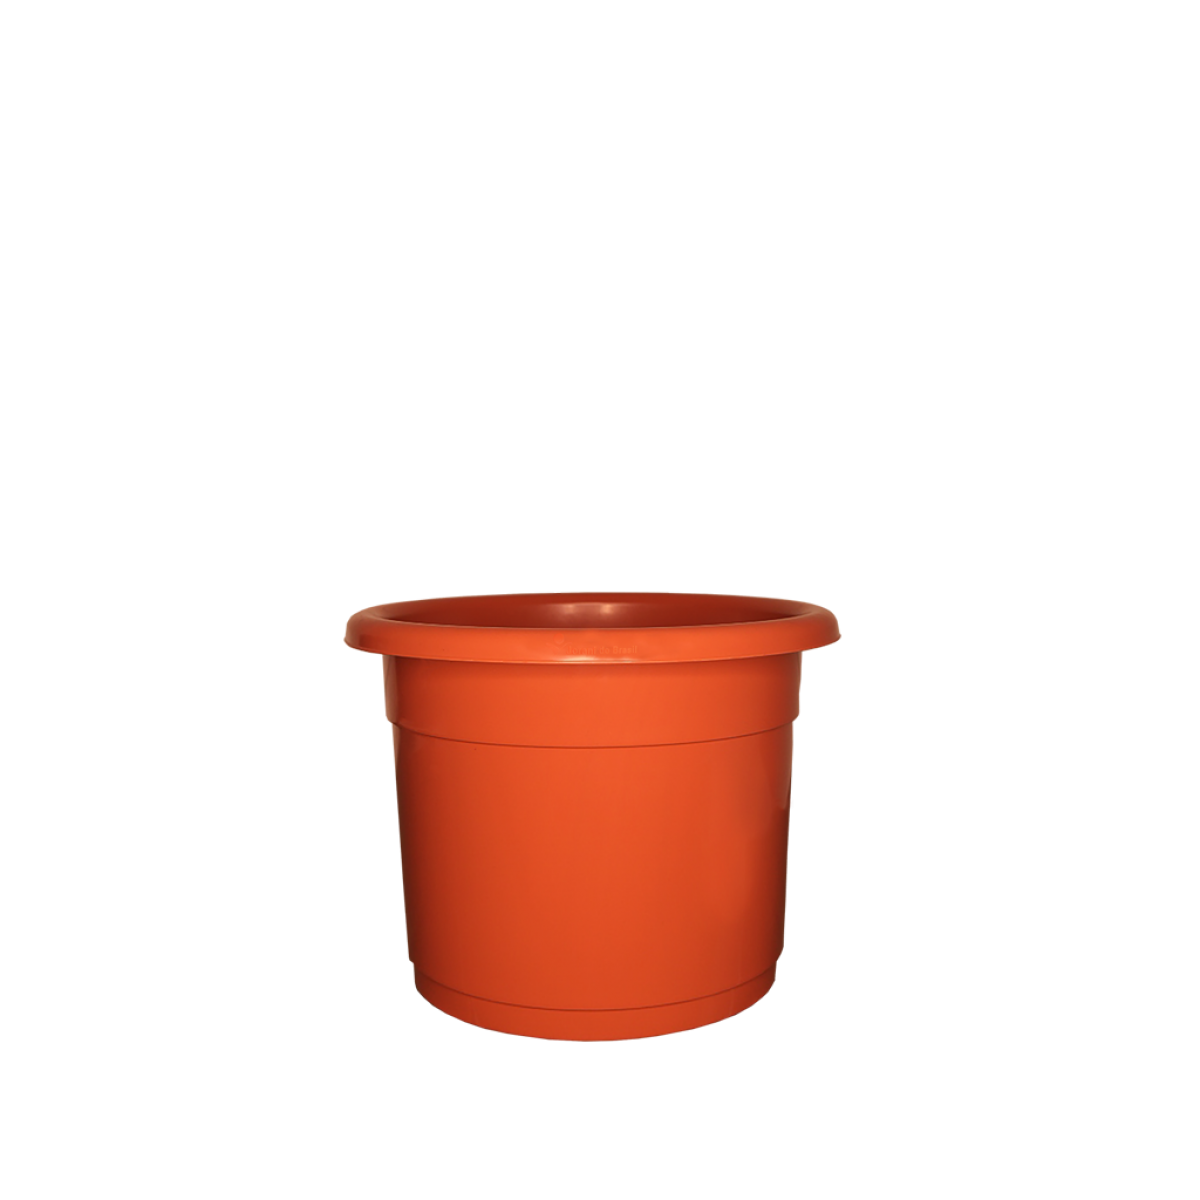 Premium Vase Nº18 - Ceramic - 2.3 liters